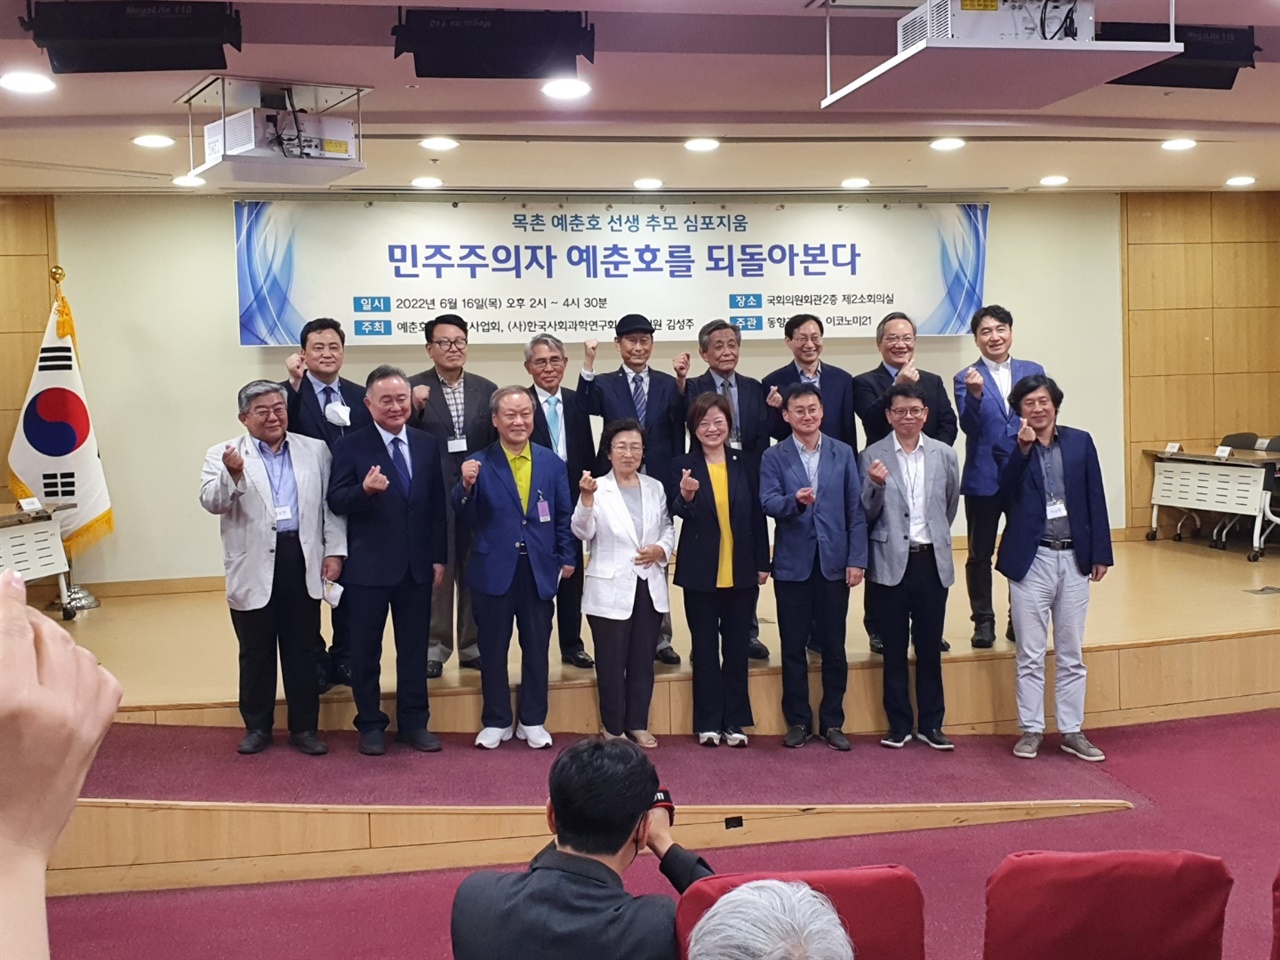 한국사회과학연구회(이사장 허상수)는16일 오후 2시부터 국회 의원회관 제2 회의실에서 '예춘호 선생 추모 심포지움'을 개최했다